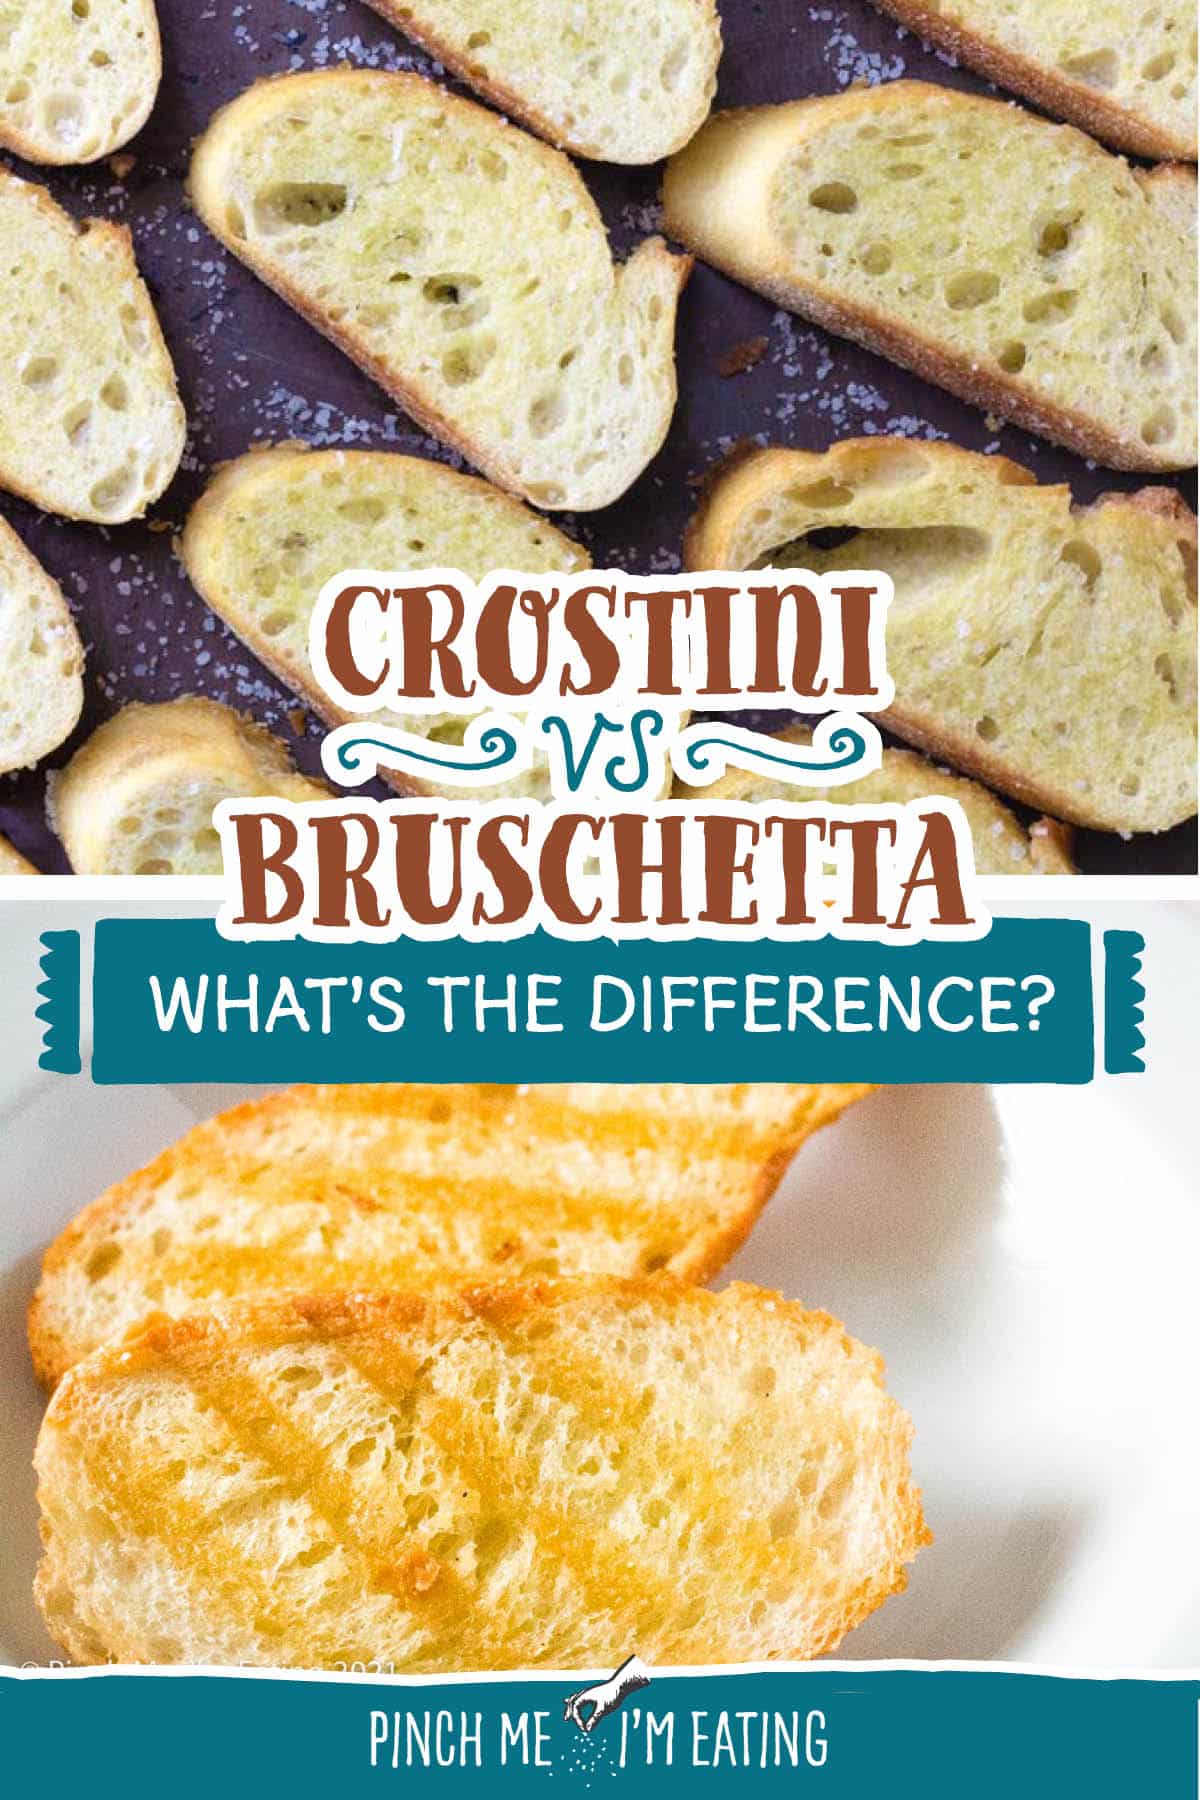 Feature image for crostini vs. bruschetta.